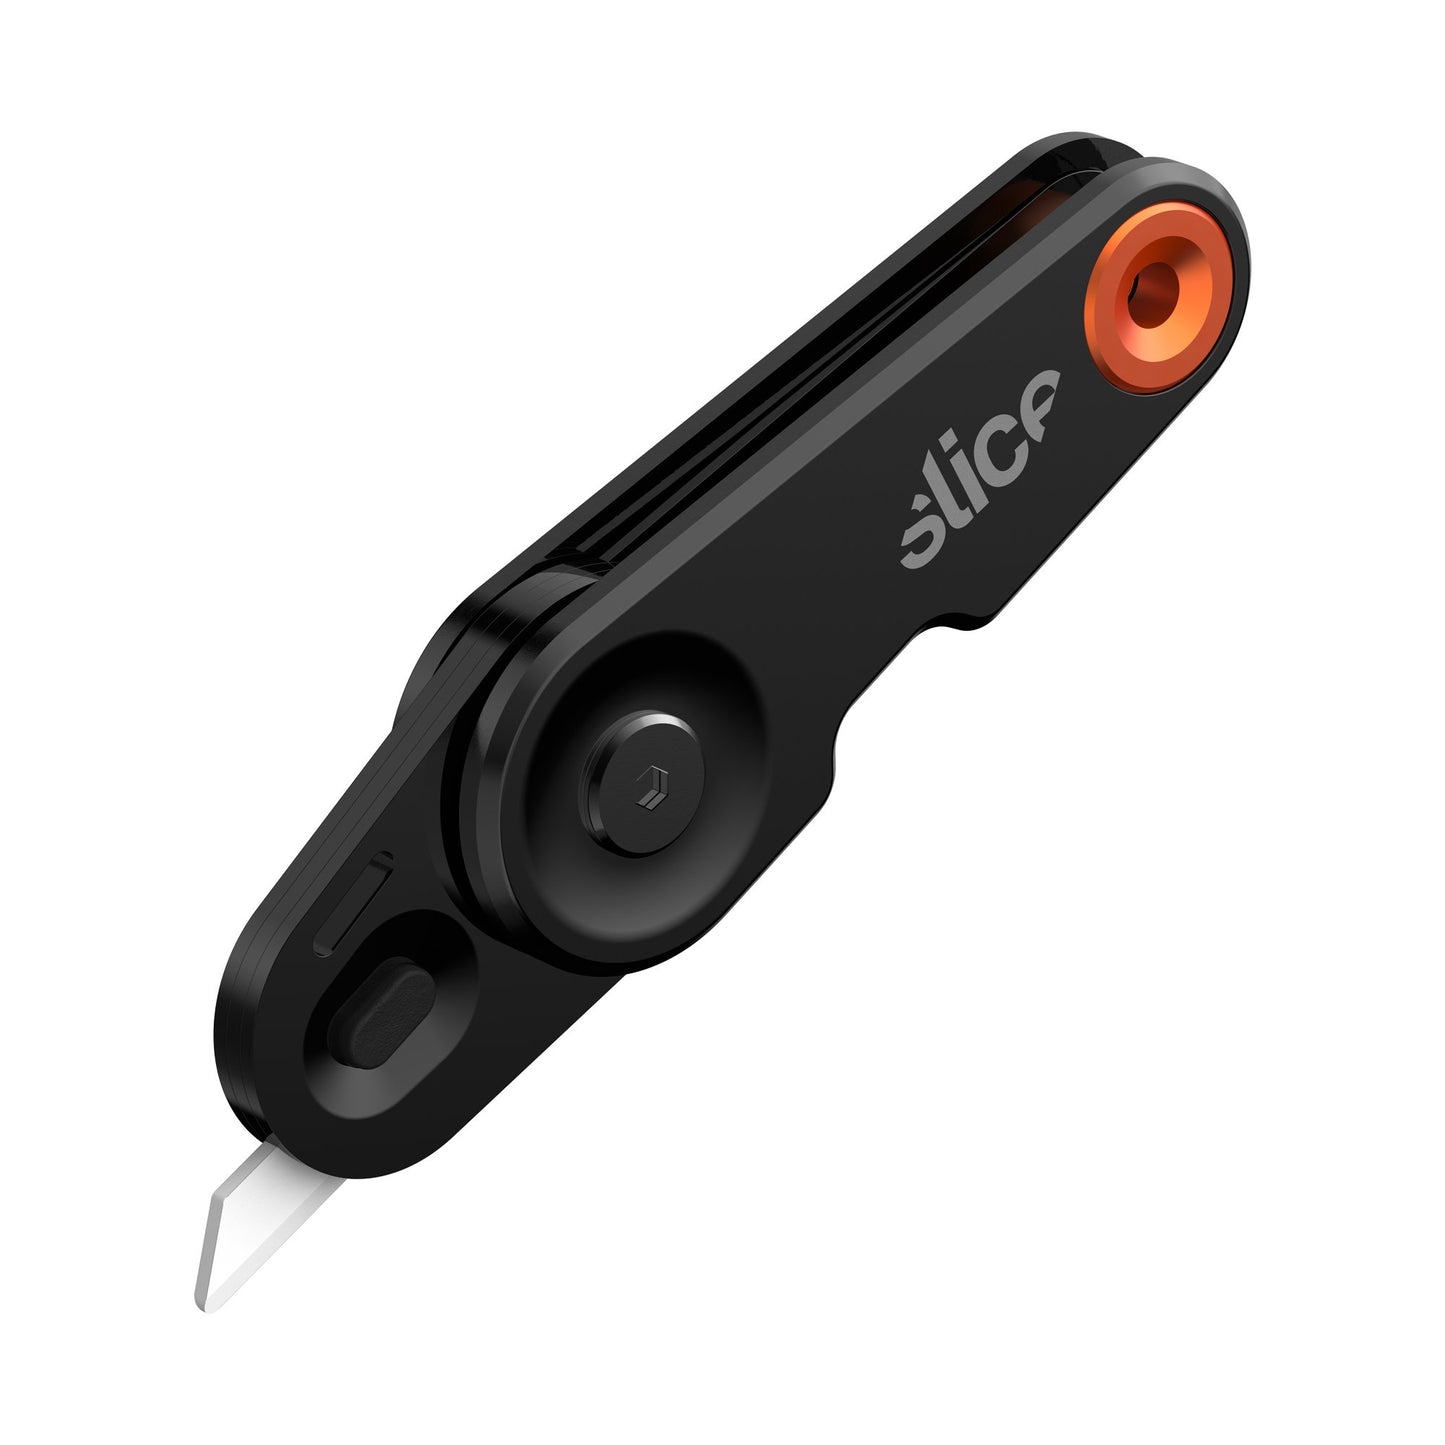 The Slice® 10495 EDC Folding Knife